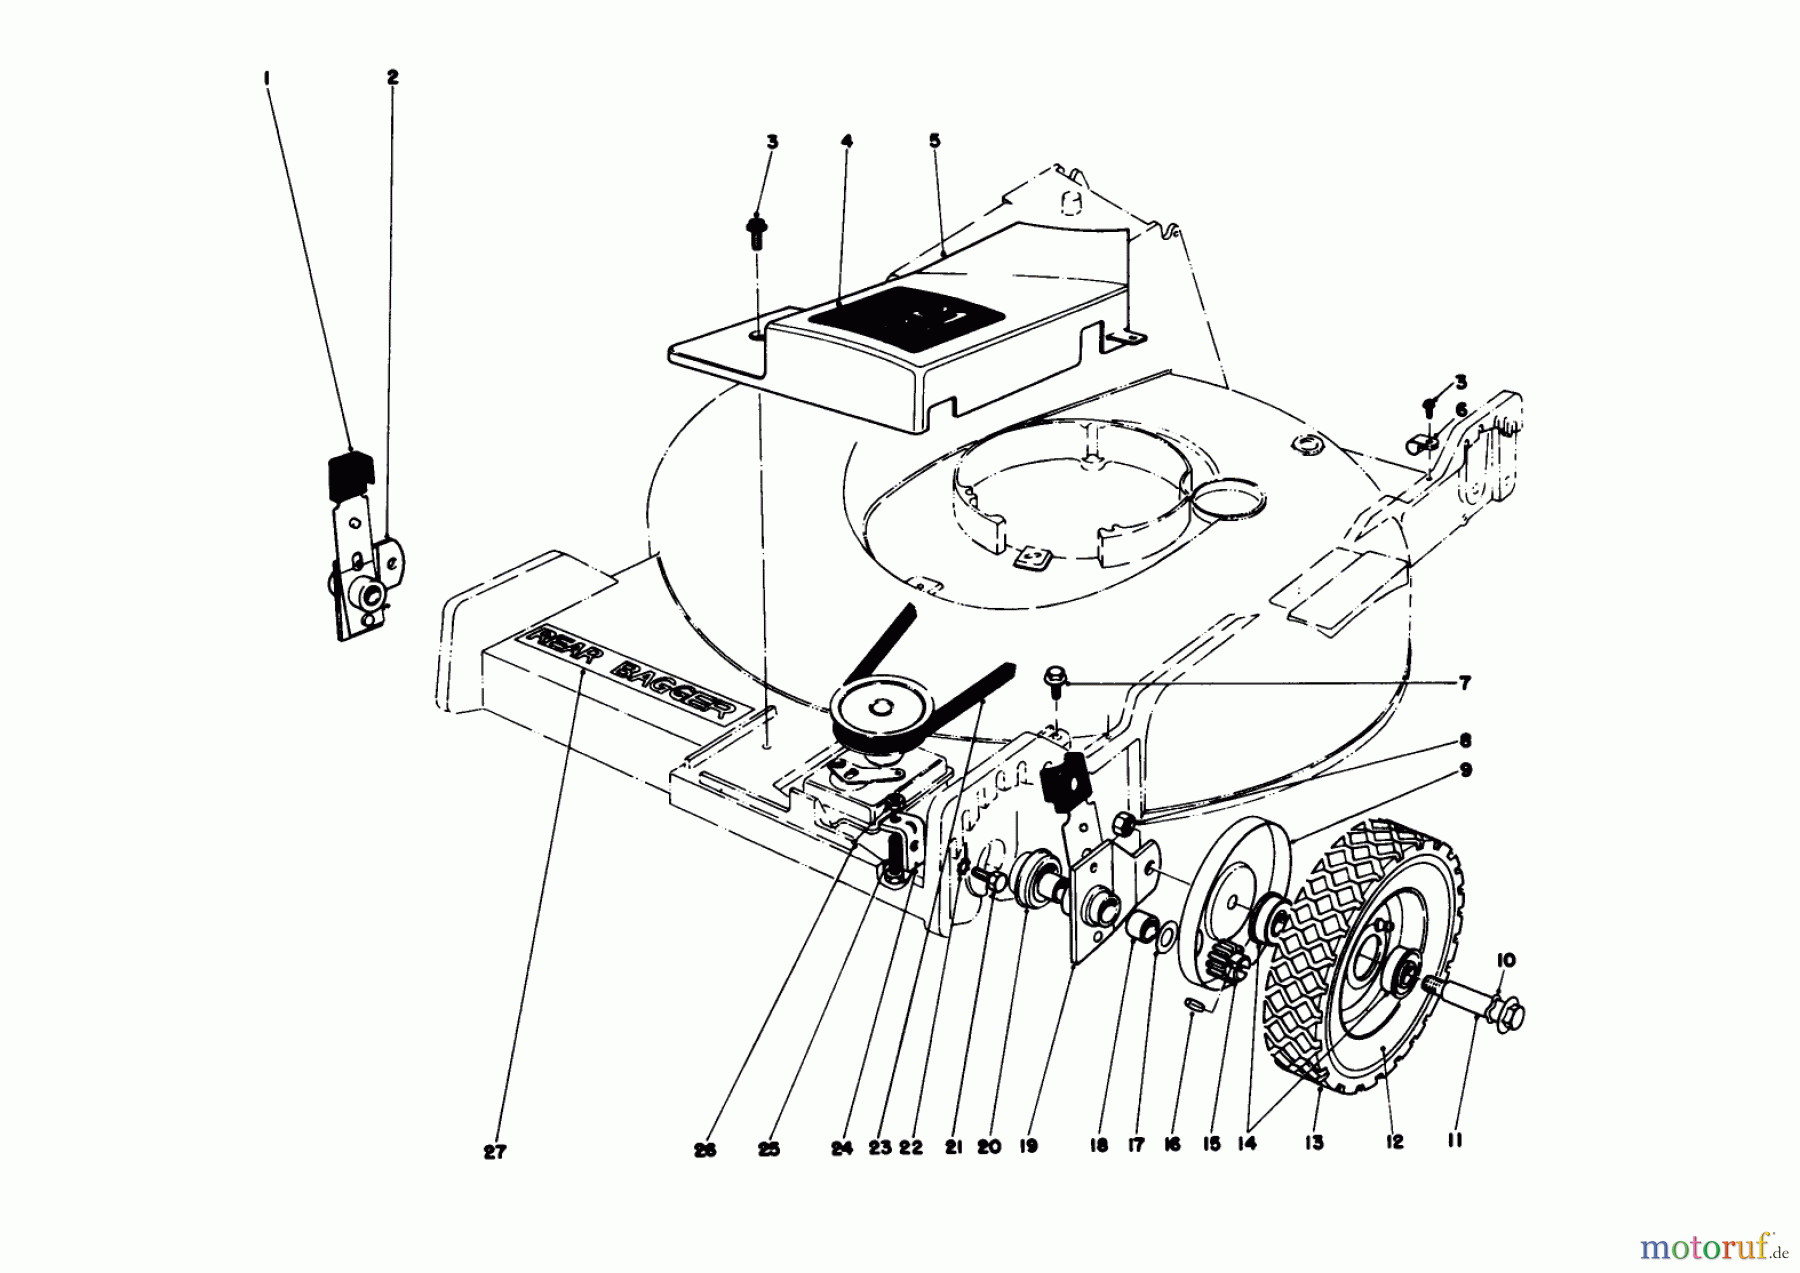  Toro Neu Mowers, Walk-Behind Seite 1 20575 - Toro Lawnmower, 1978 (8007501-8999999) FRONT WHEEL AND PIVOT ARM ASSEMBLY